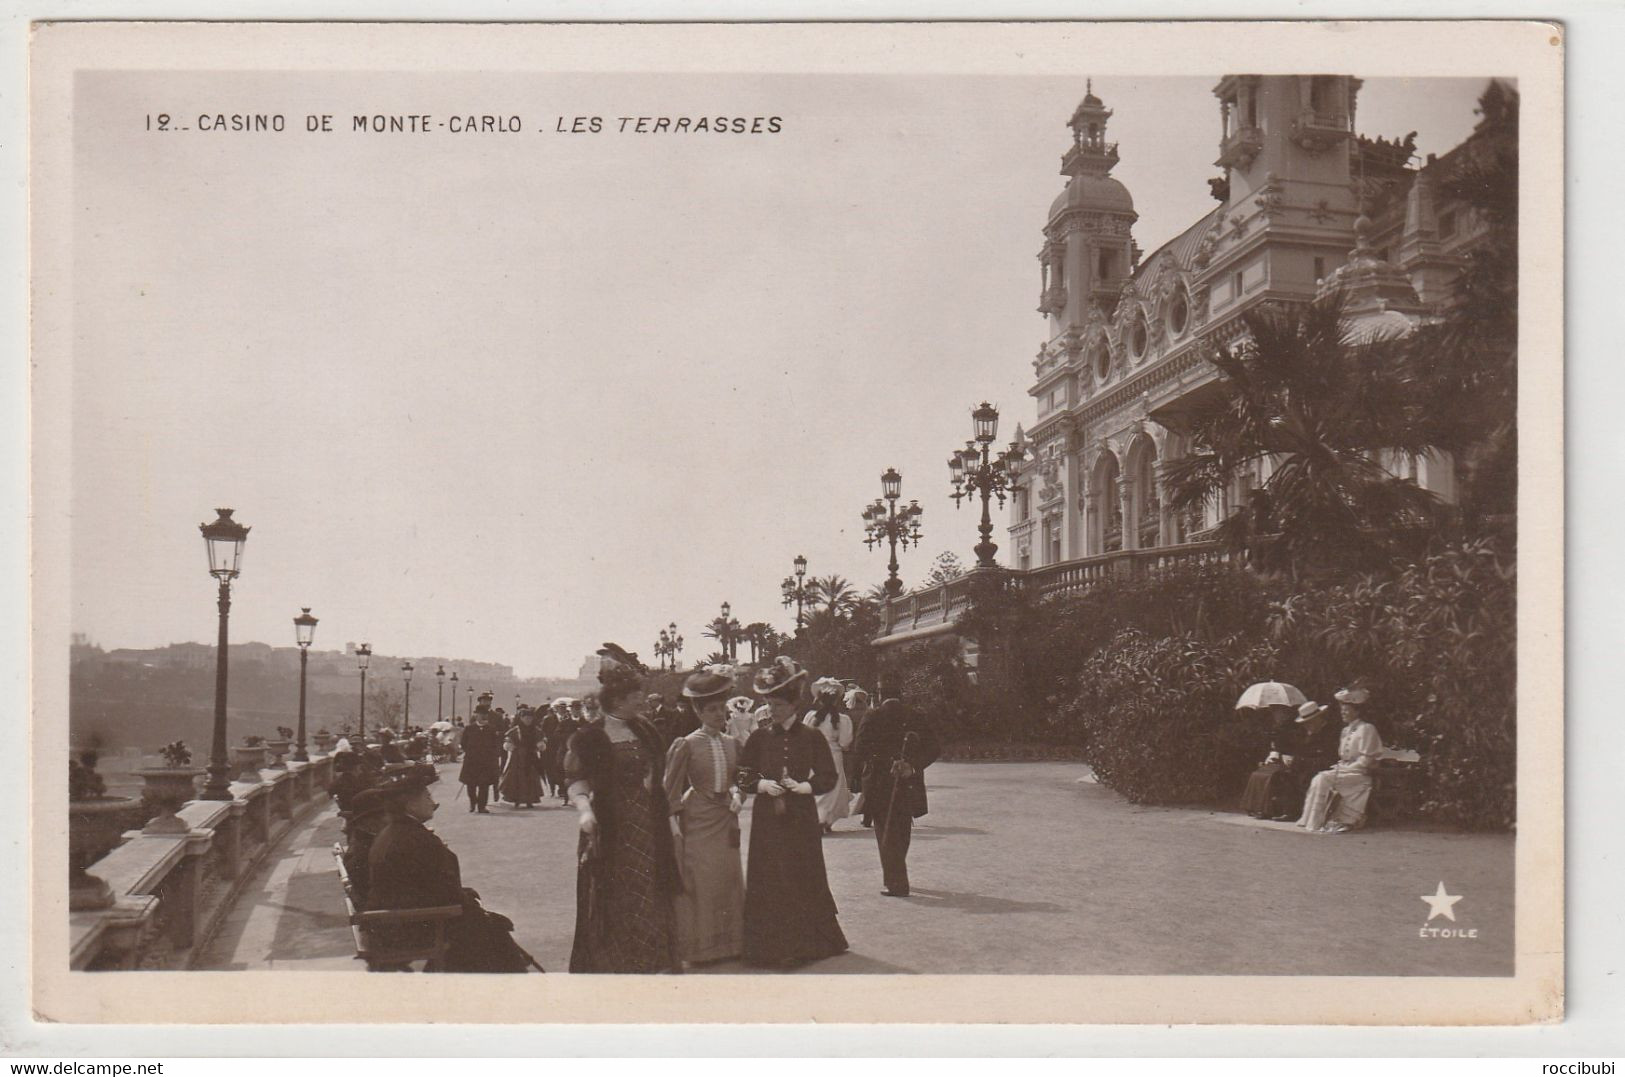 Monte-Carlo, Casino De Monte-Carlo, Les Terrasses - Monte-Carlo